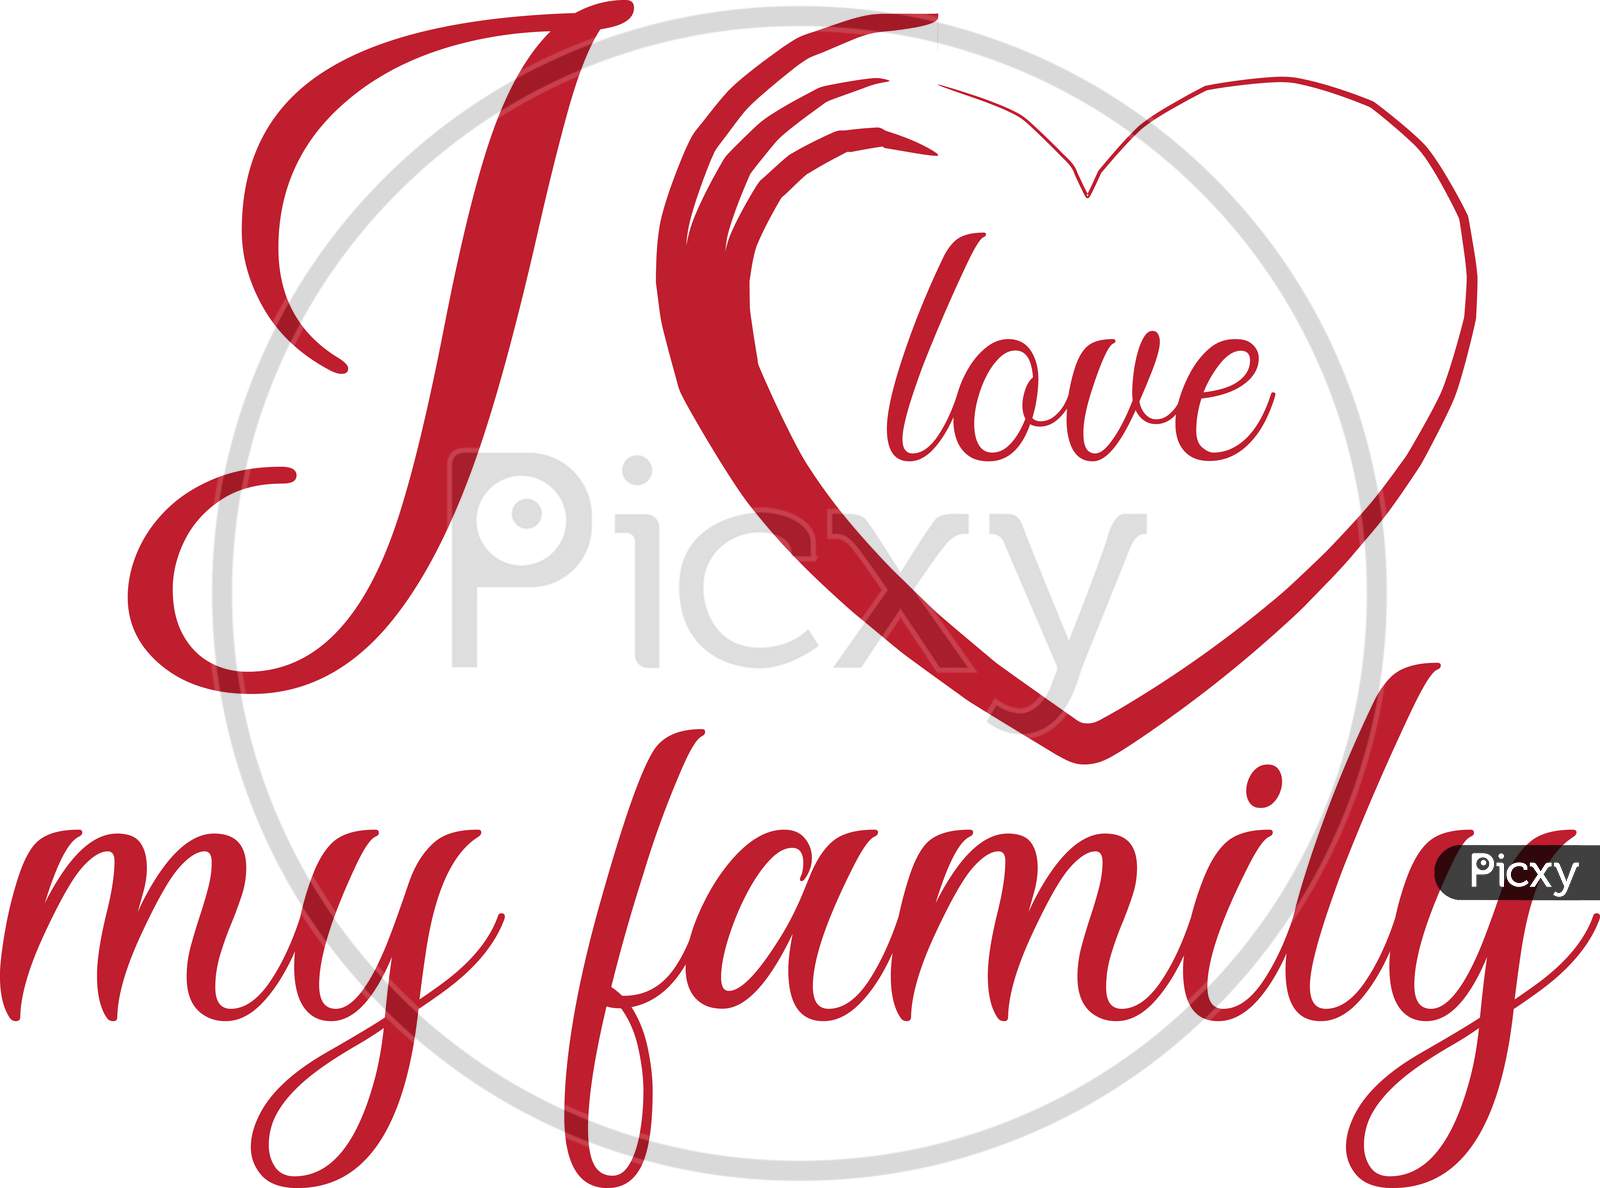 i love my family logo